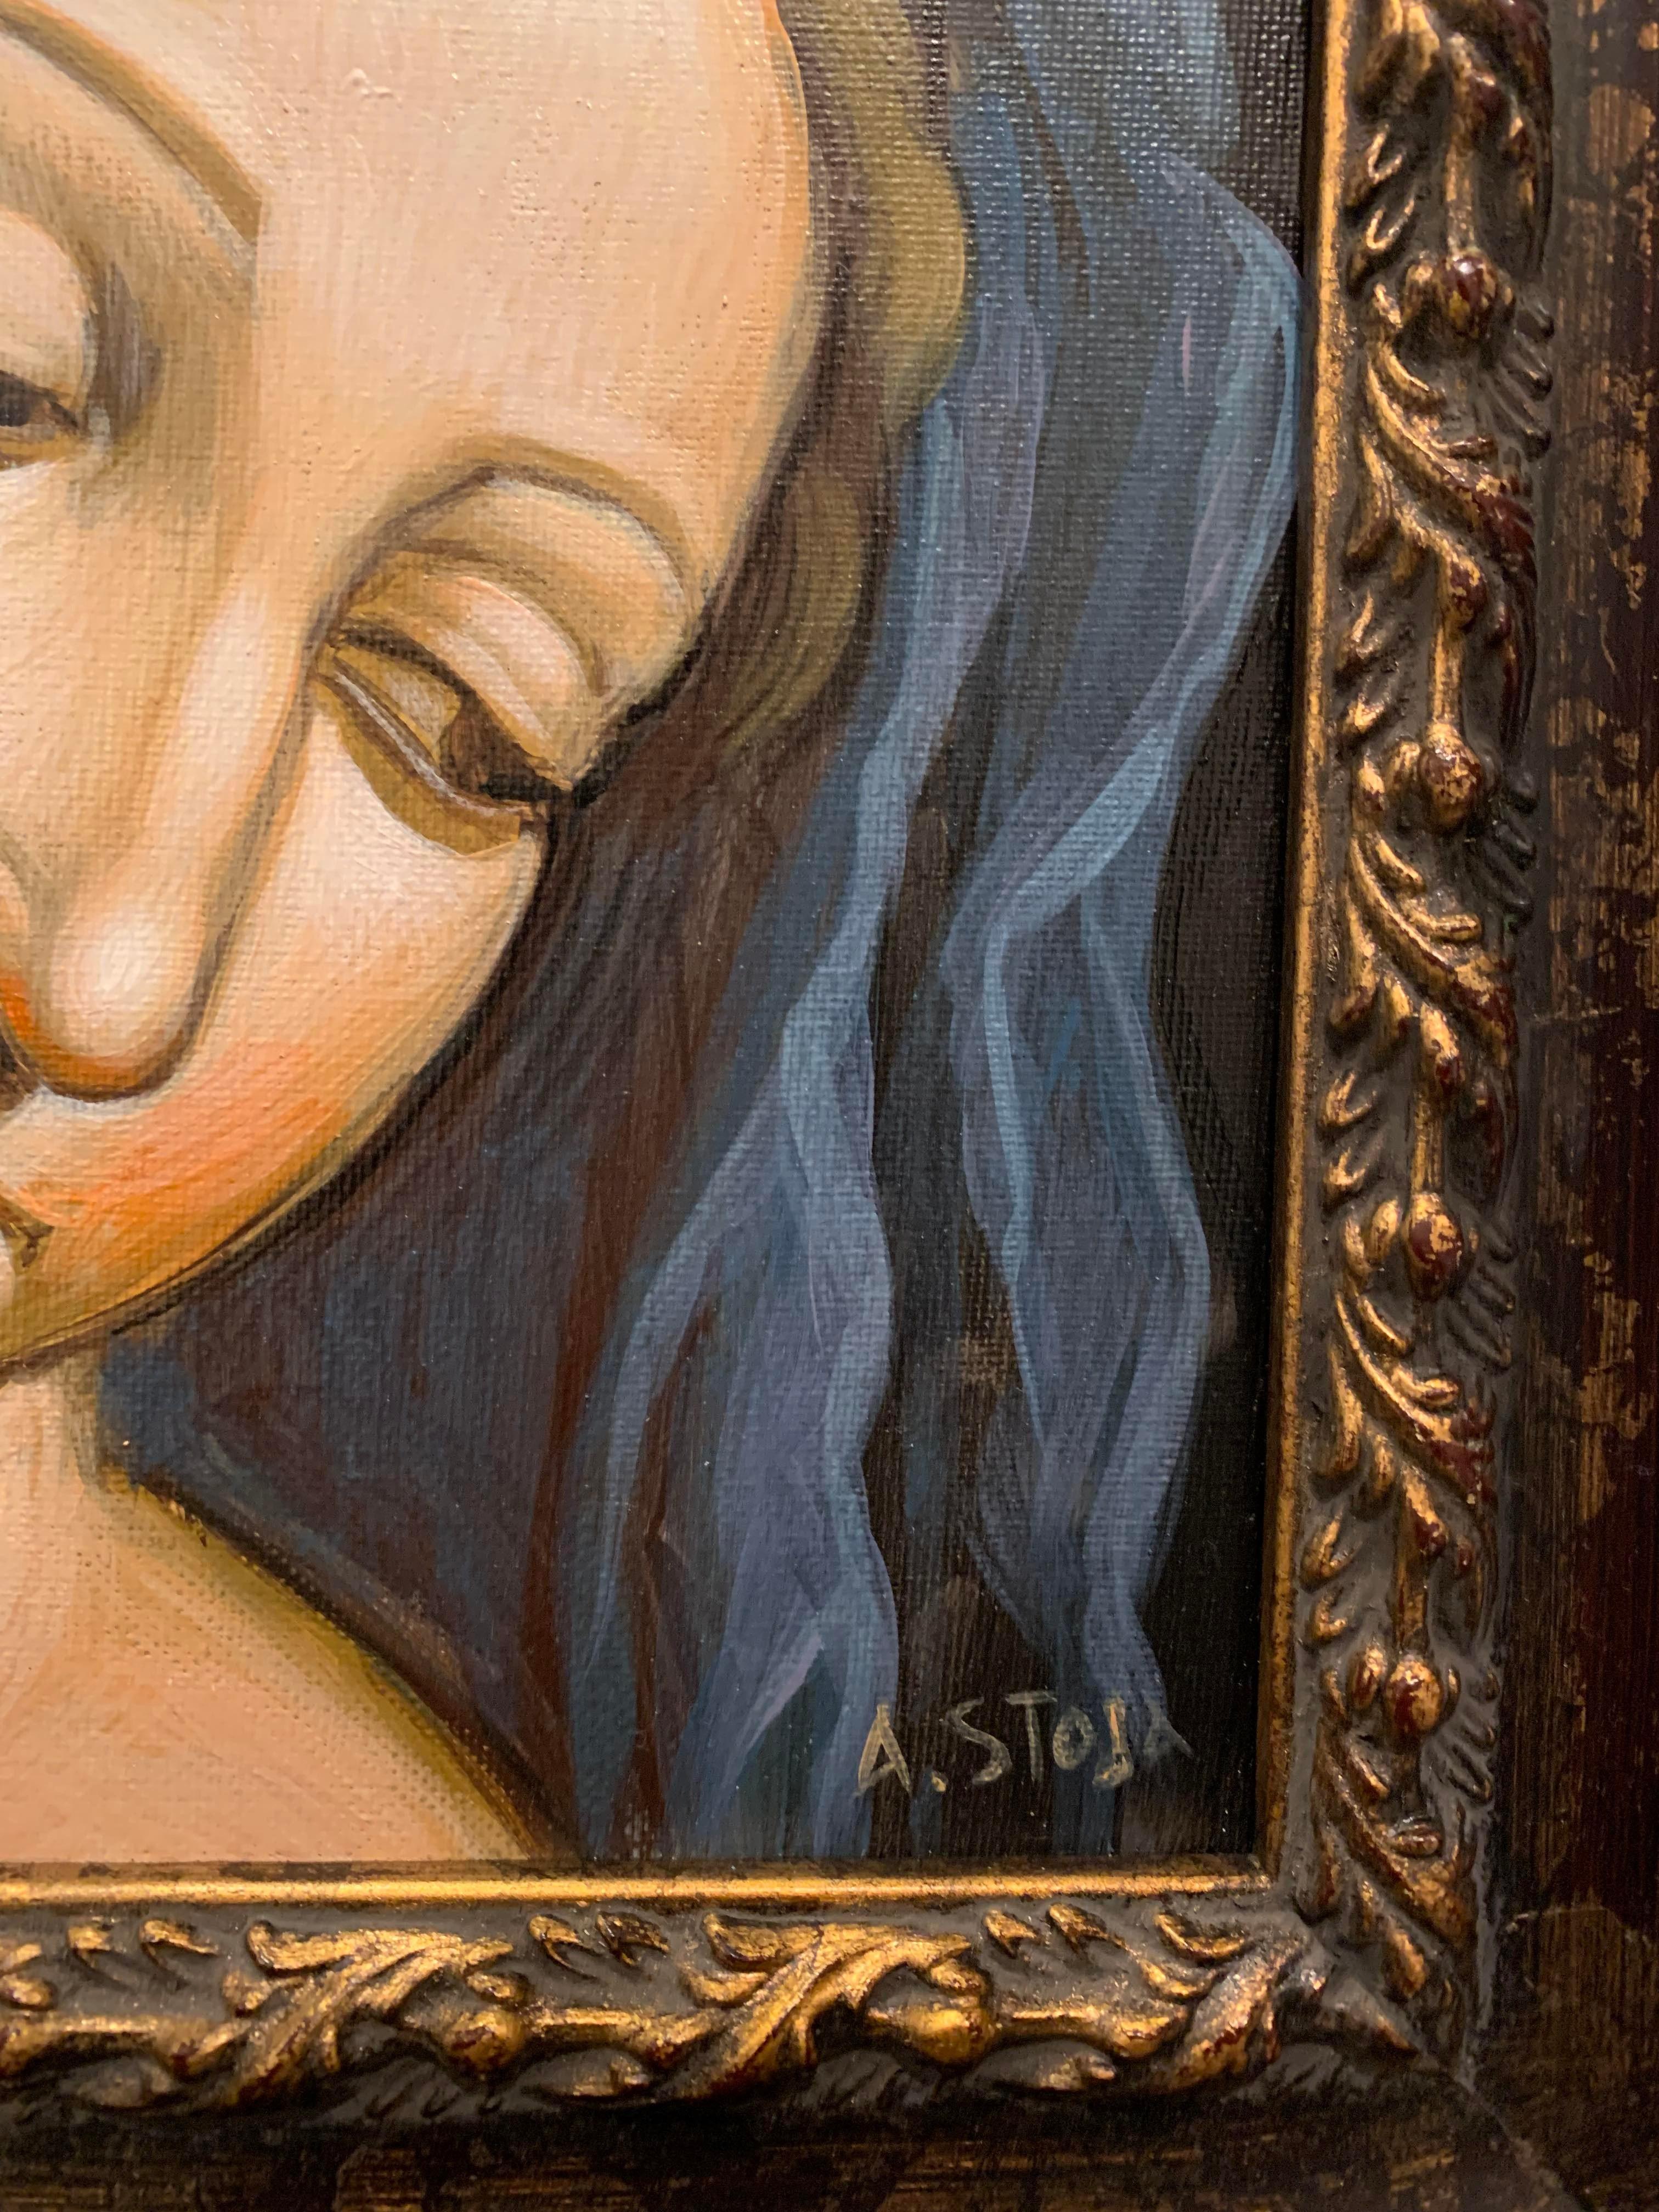 Dieses Gemälde in Acryl auf Leinwand zeigt eine Madonna aus der Renaissance. Dieses spirituelle Porträt ist wunderschön gerahmt und zeigt einen anmutigen Moment. Der azurblaue Stoff wird verwendet, um Extravaganz darzustellen, da blaue Farbe in der